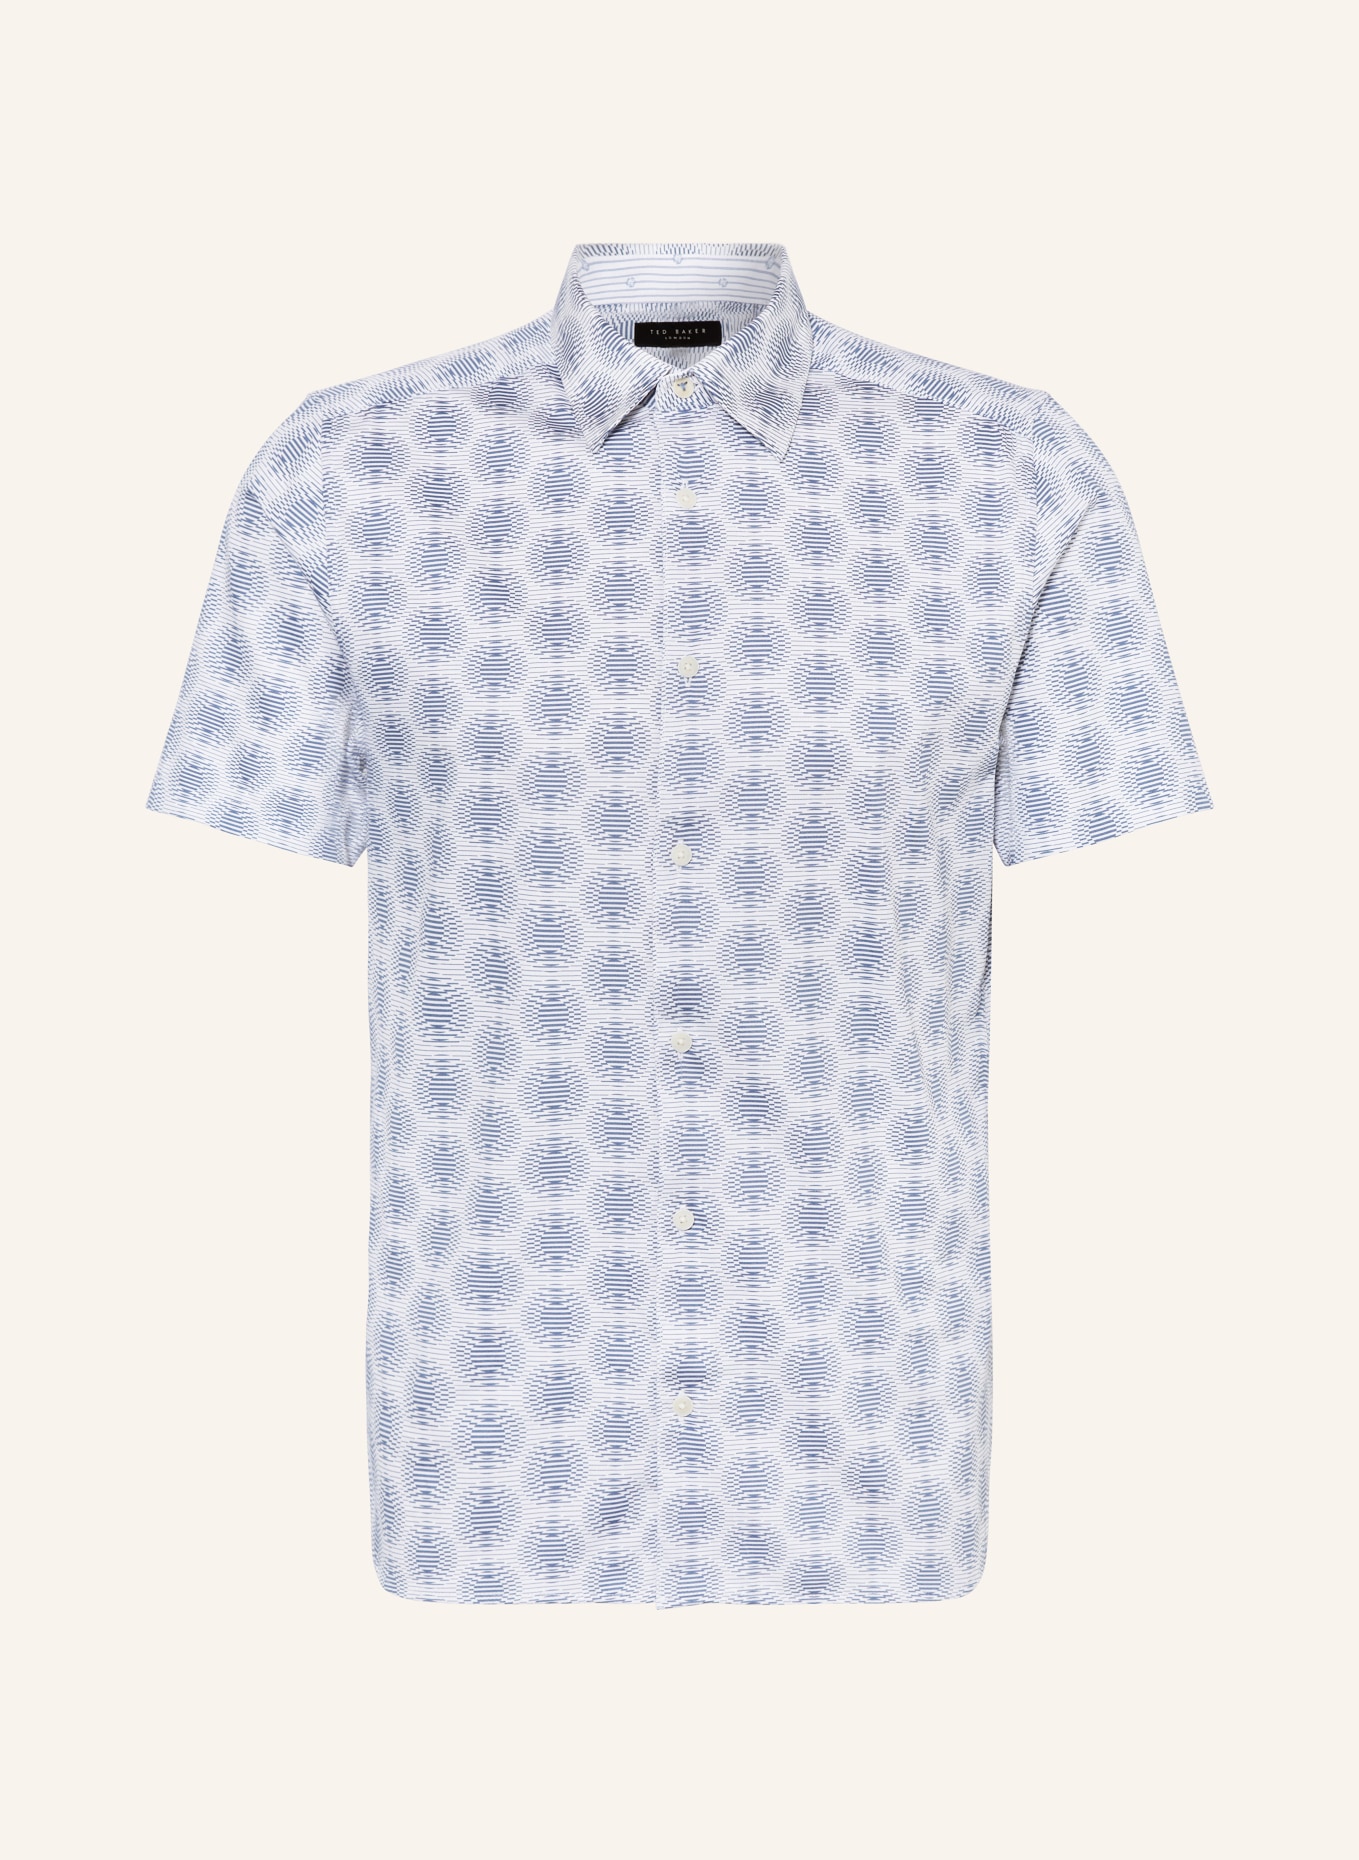 TED BAKER Kurzarm-Hemd PEARSHO Slim Fit, Farbe: WEISS/ HELLBLAU (Bild 1)